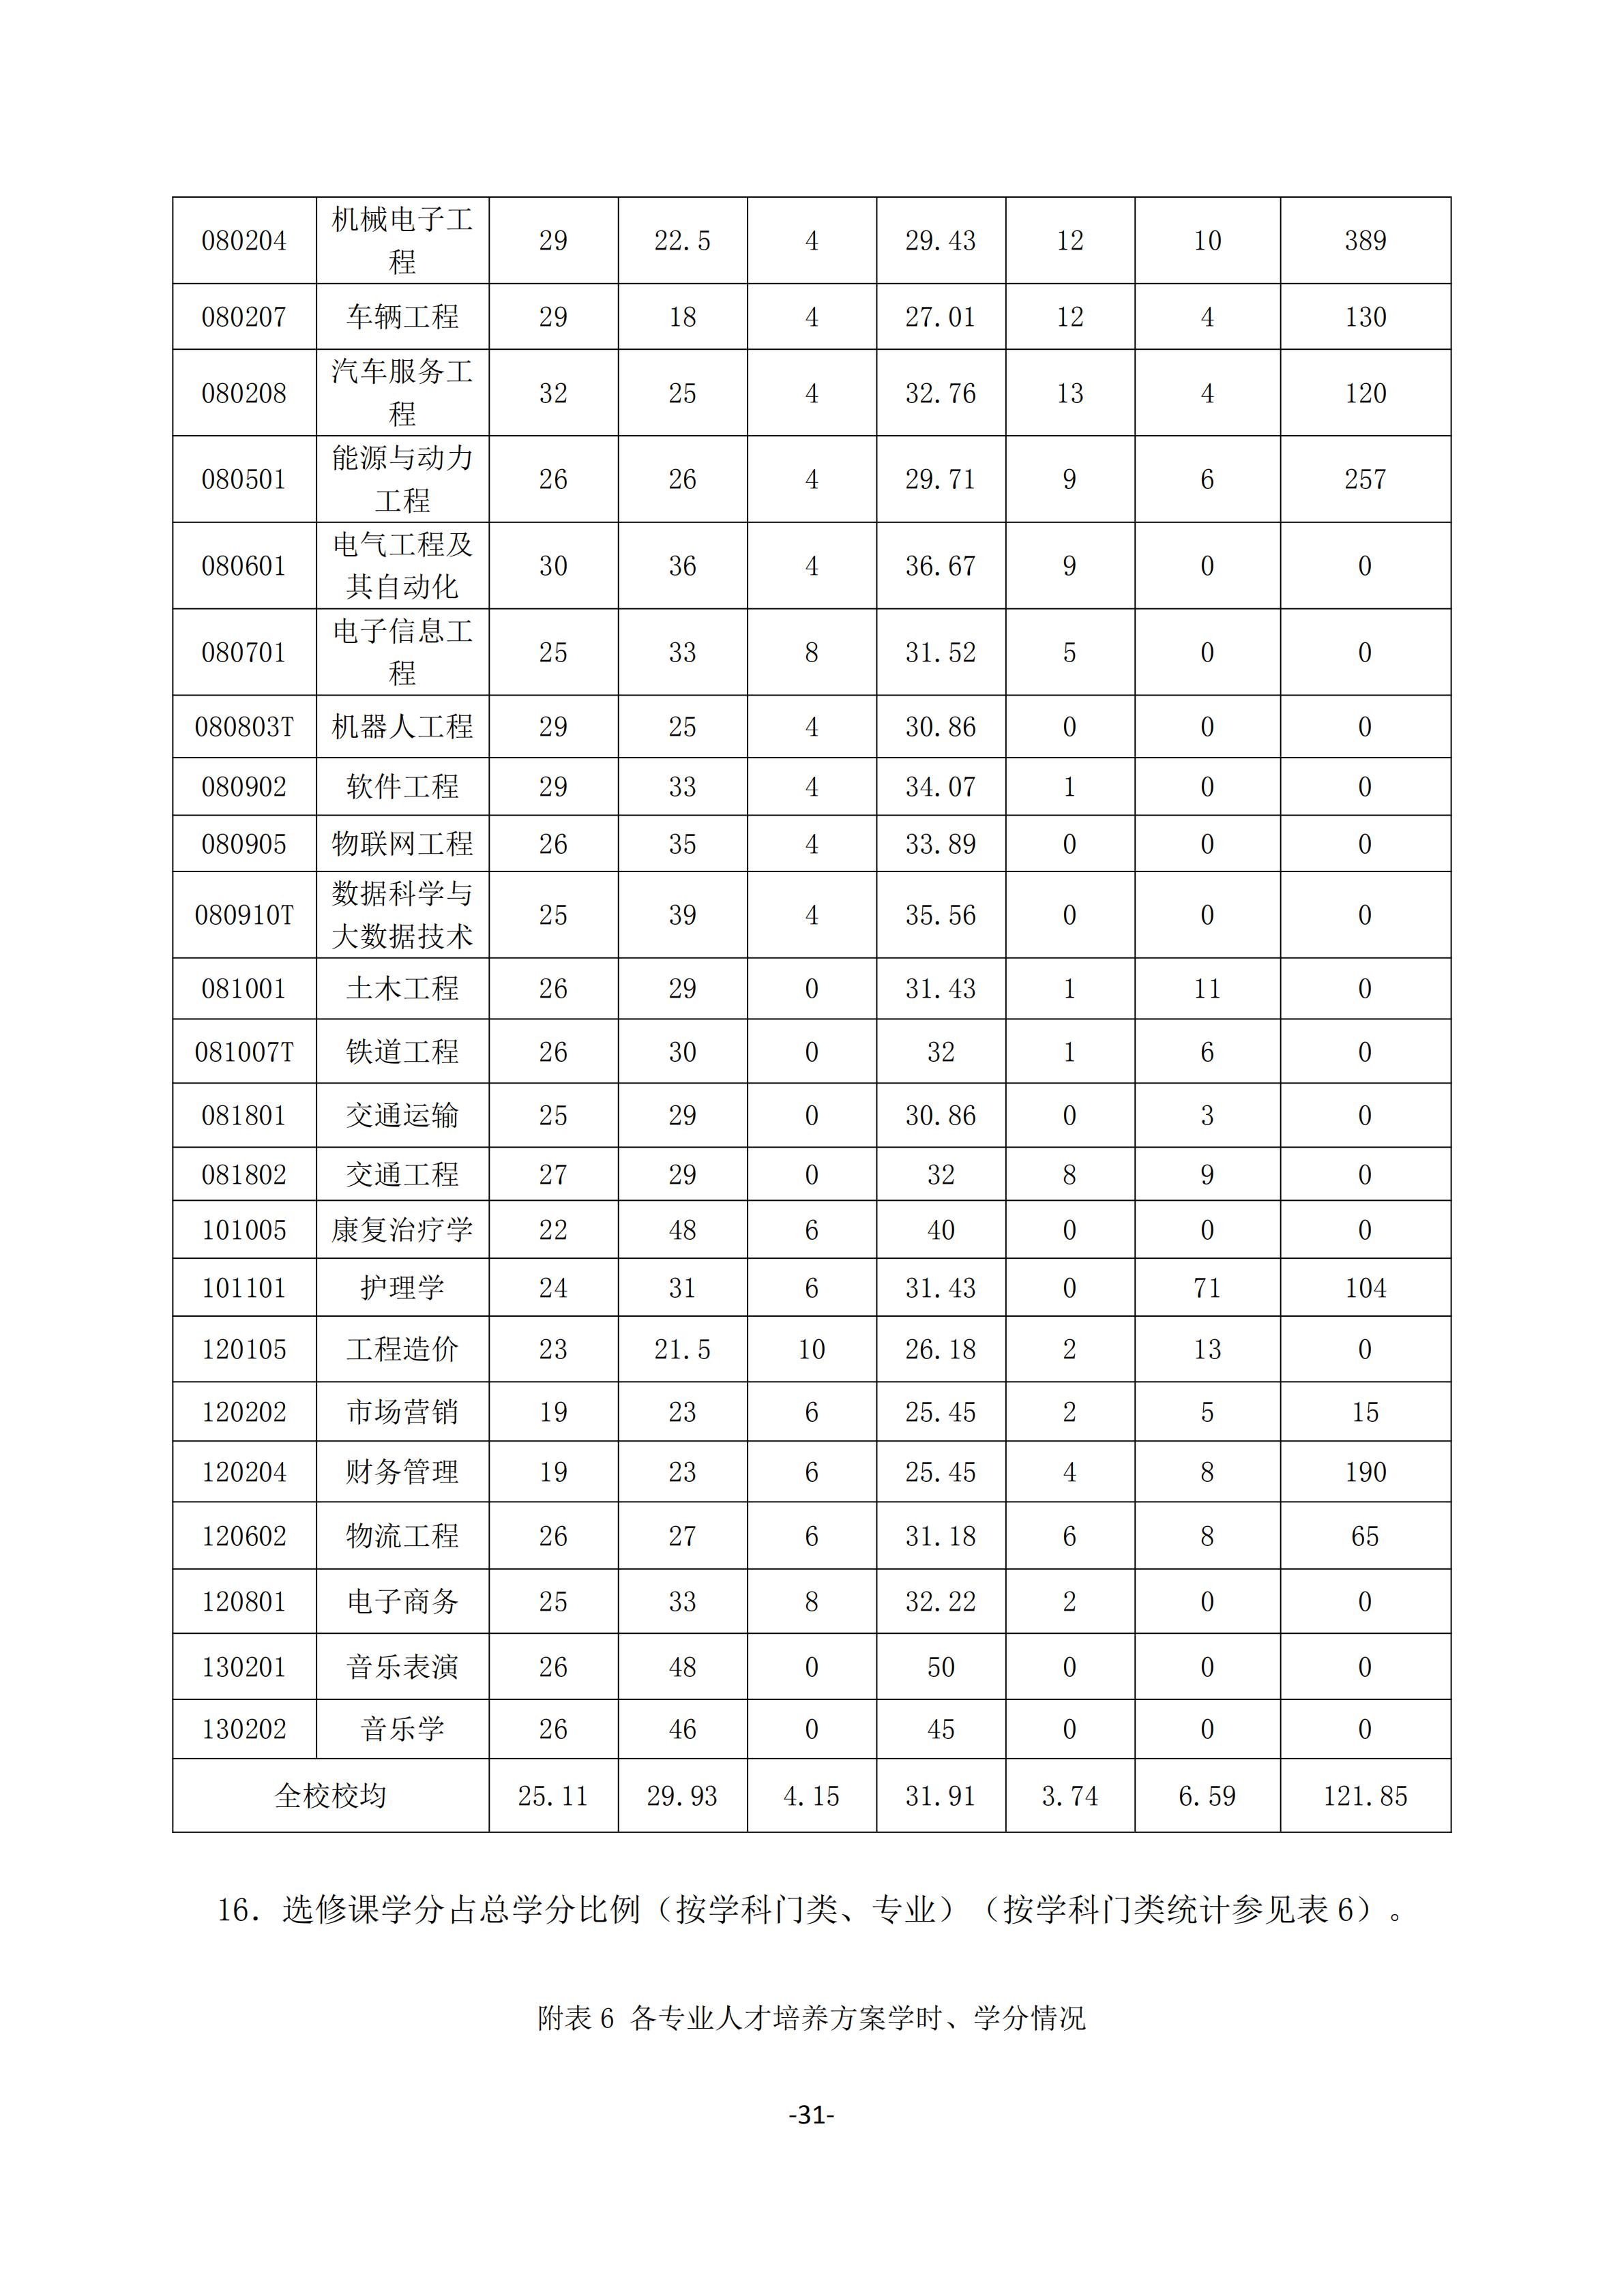 1.湖南交通工程学院2018-2019学年本科教学质量报告_30.jpg